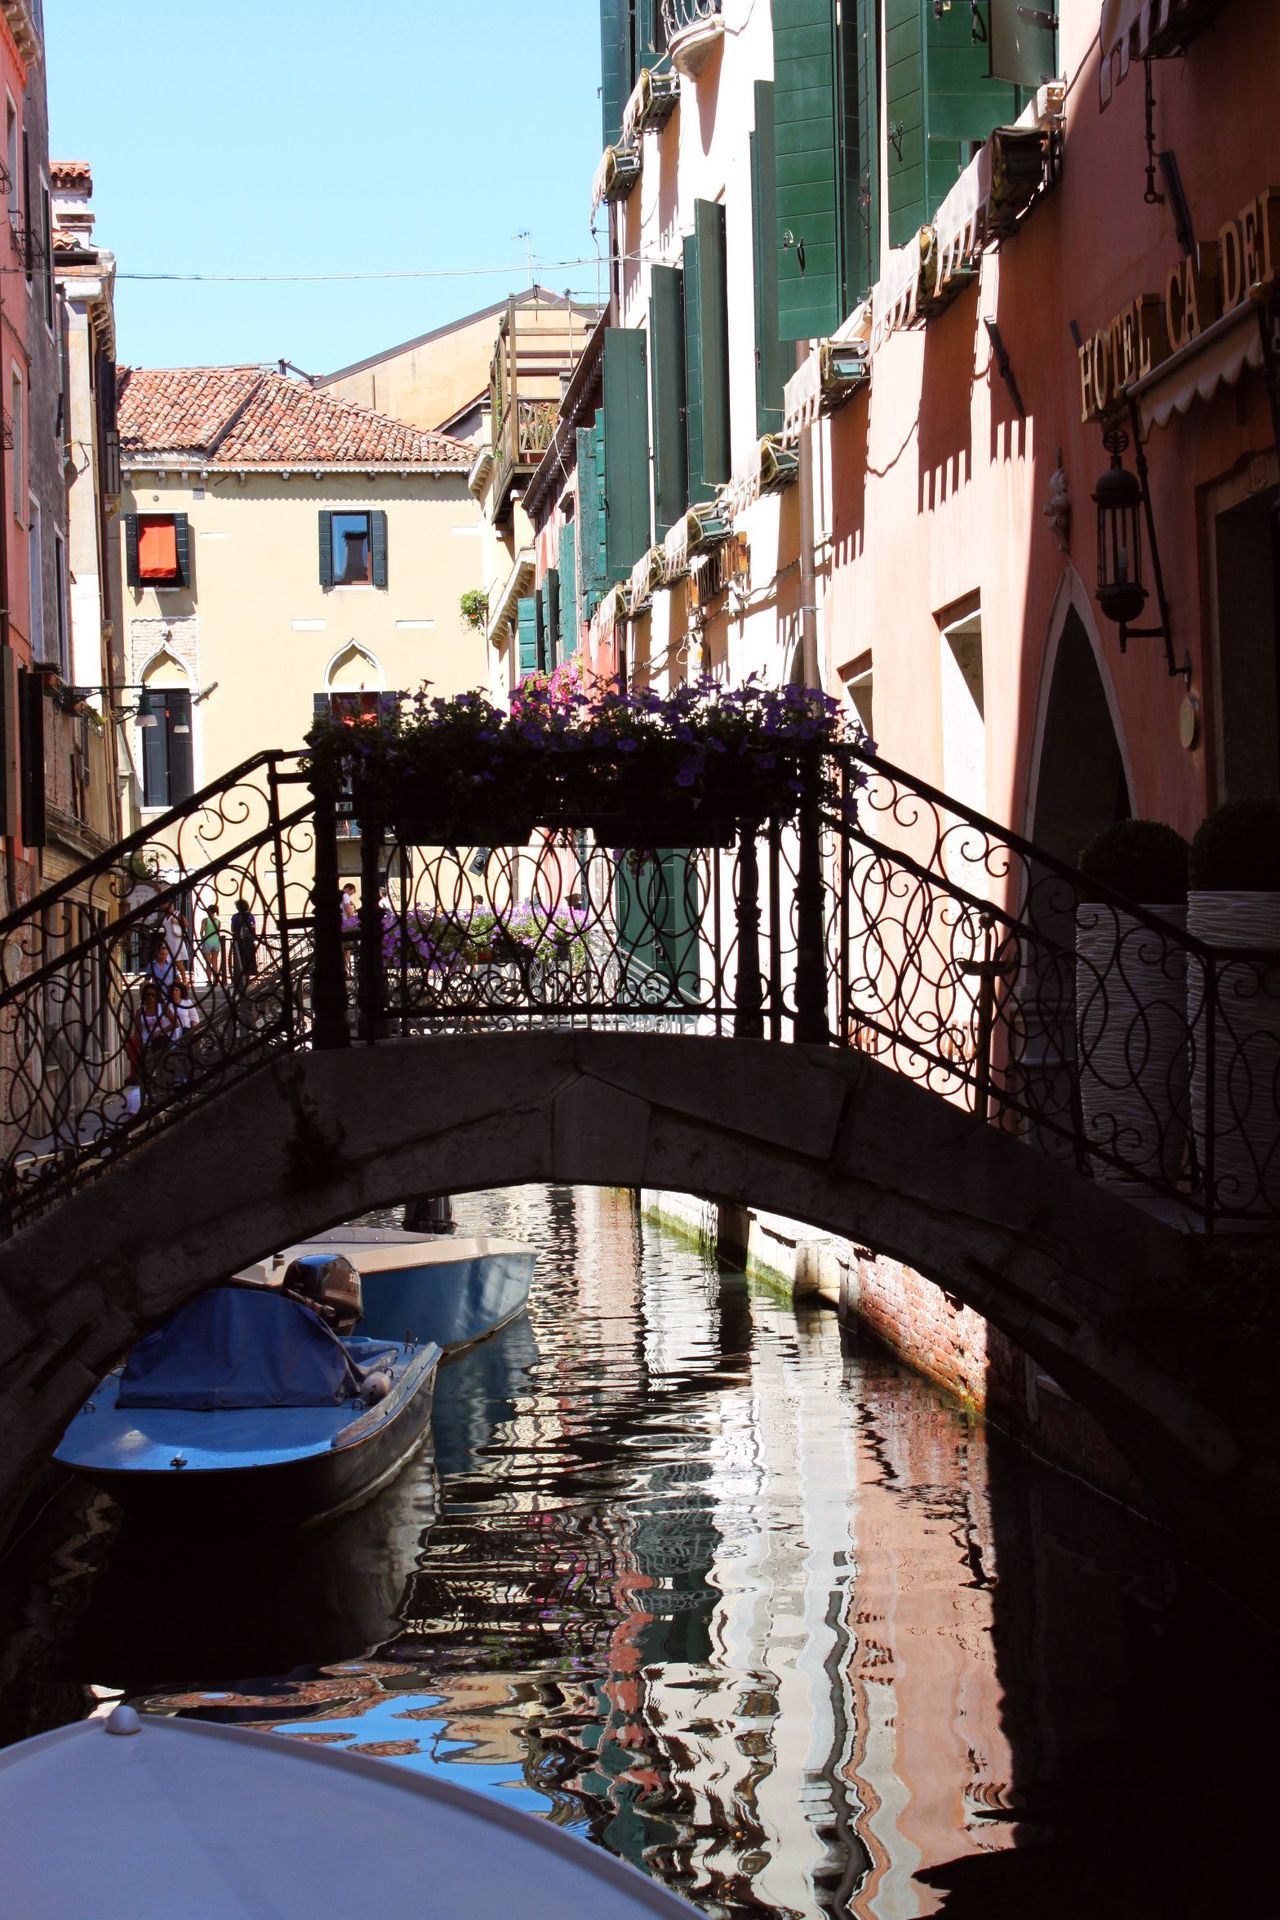 # Venice